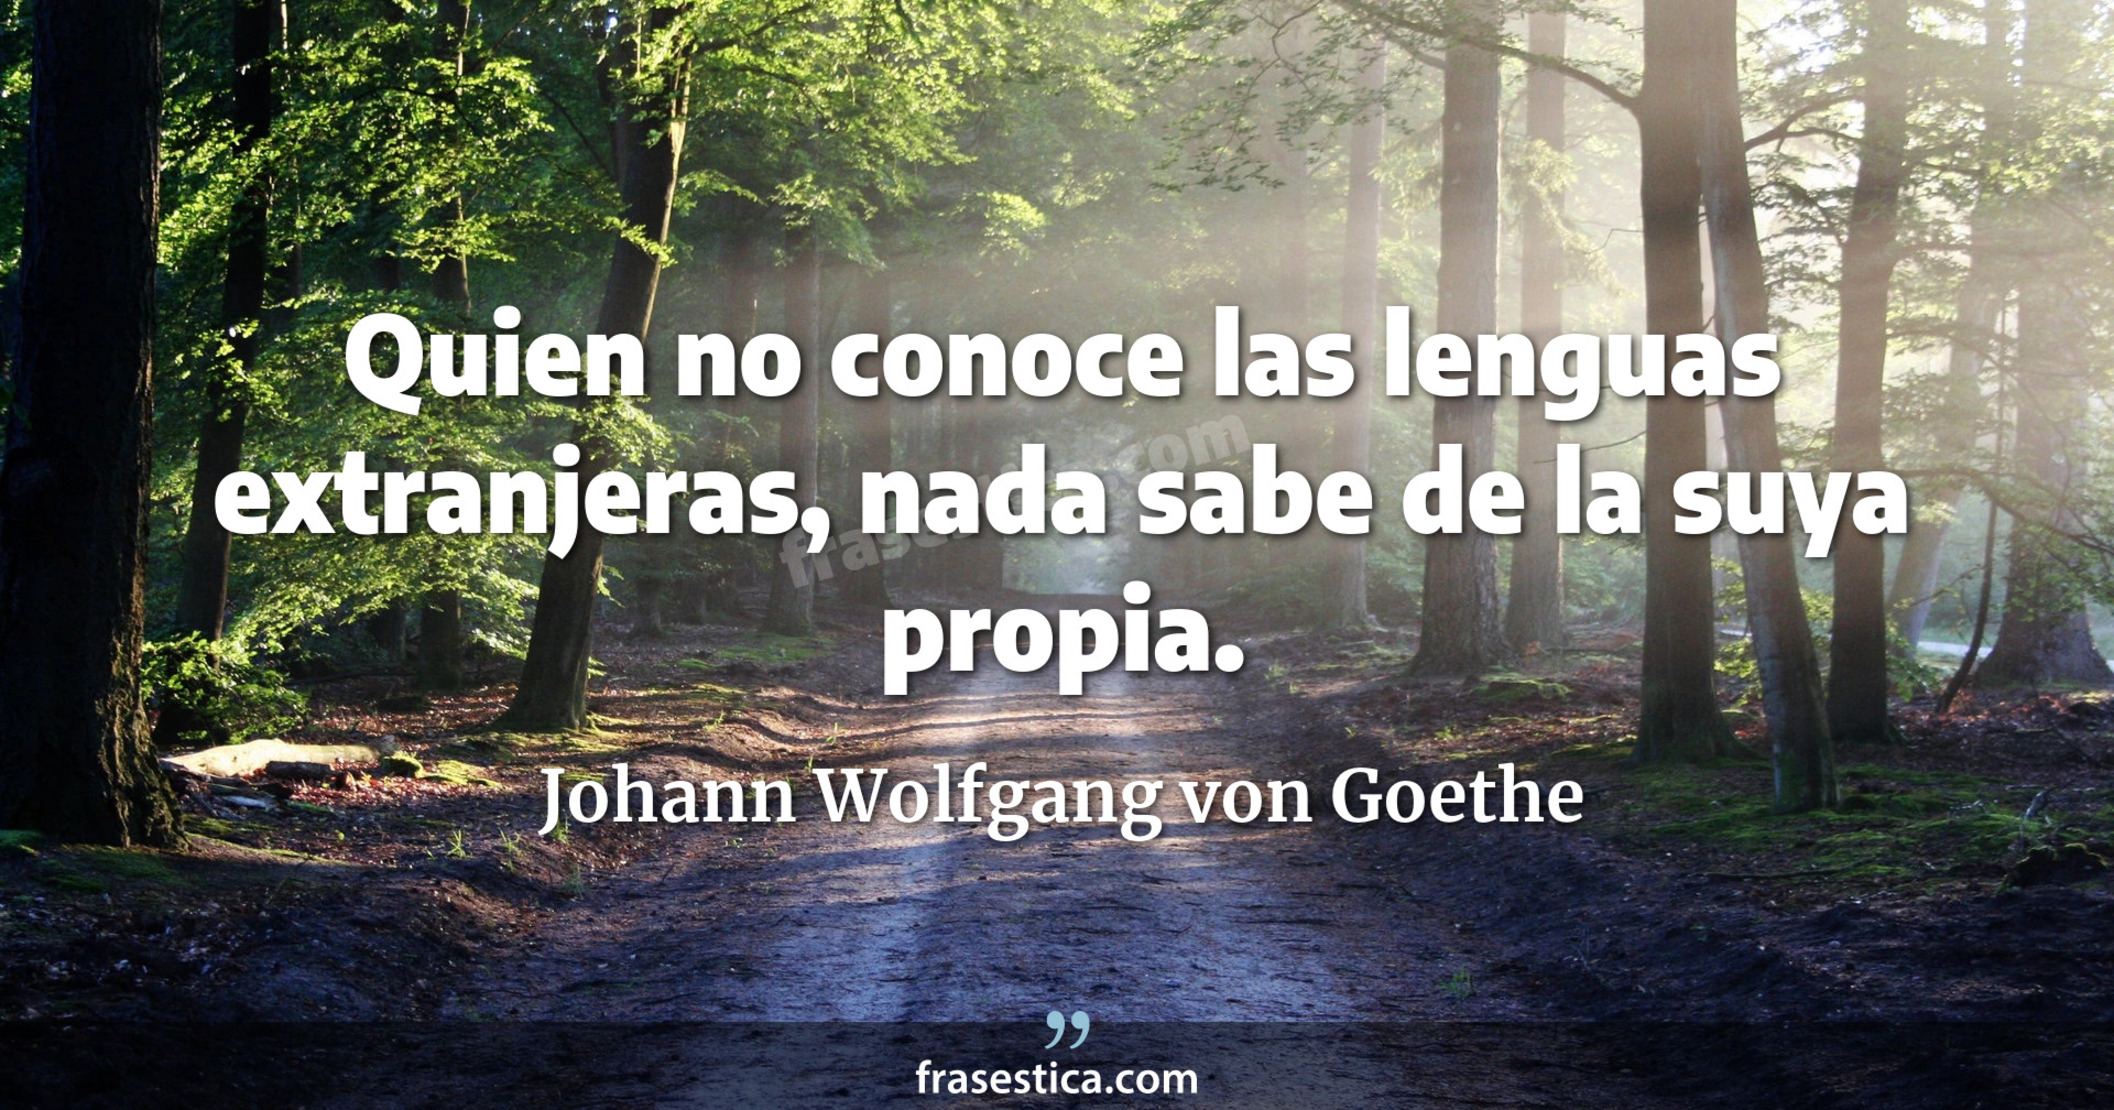 Quien no conoce las lenguas extranjeras, nada sabe de la suya propia. - Johann Wolfgang von Goethe